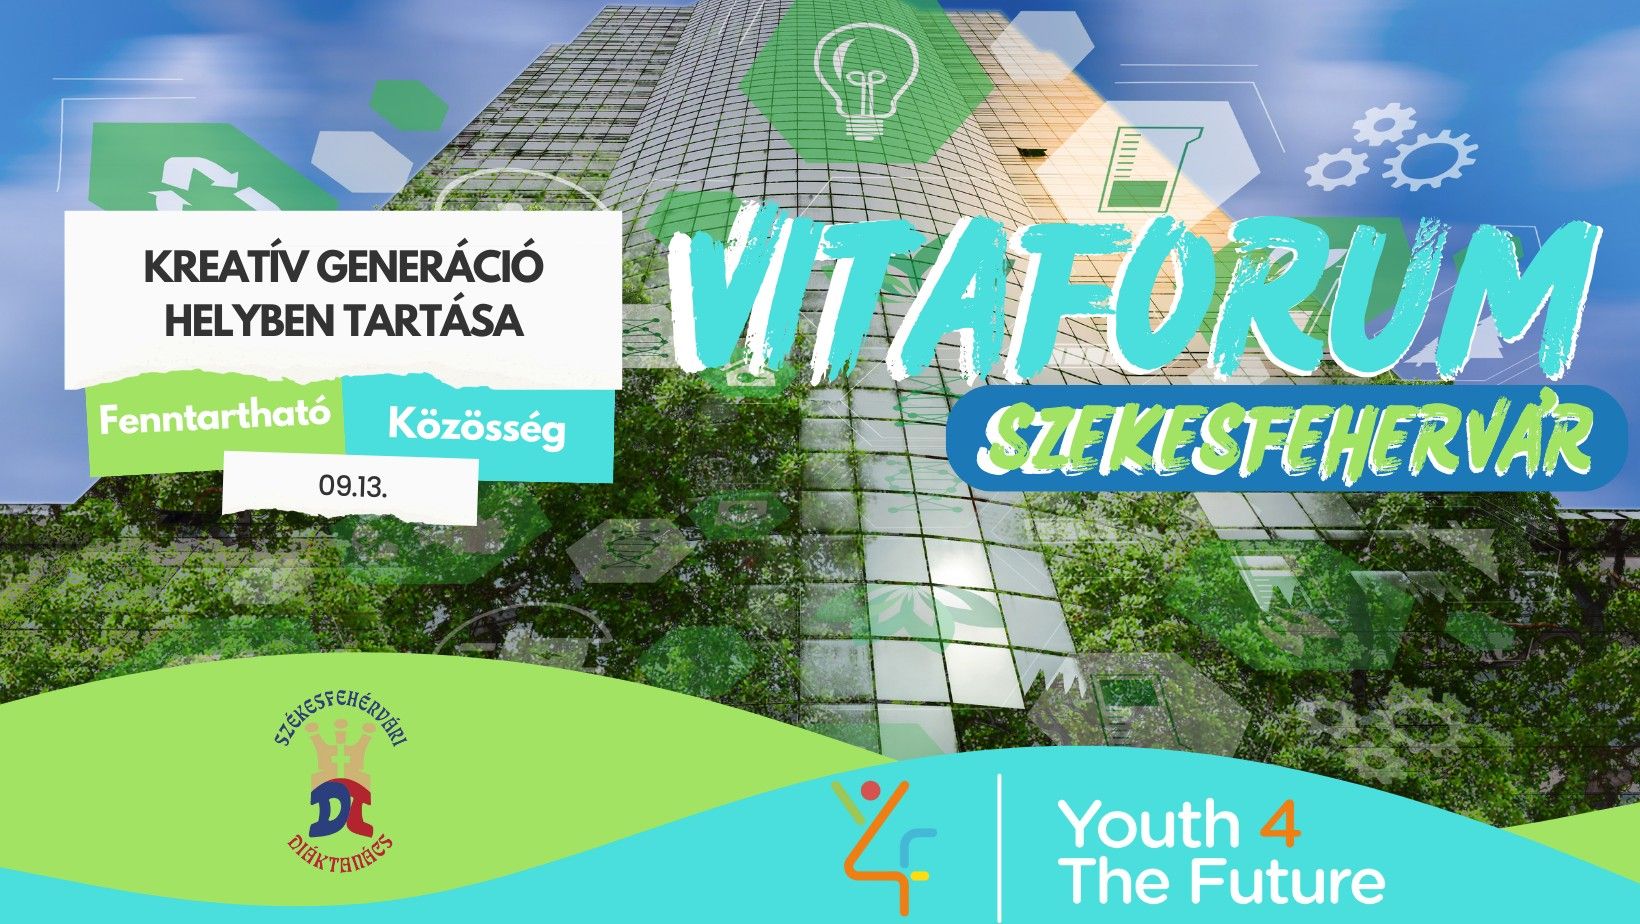 Youth 4 The Future - vitafórum a fiatalok helyben tartásáról